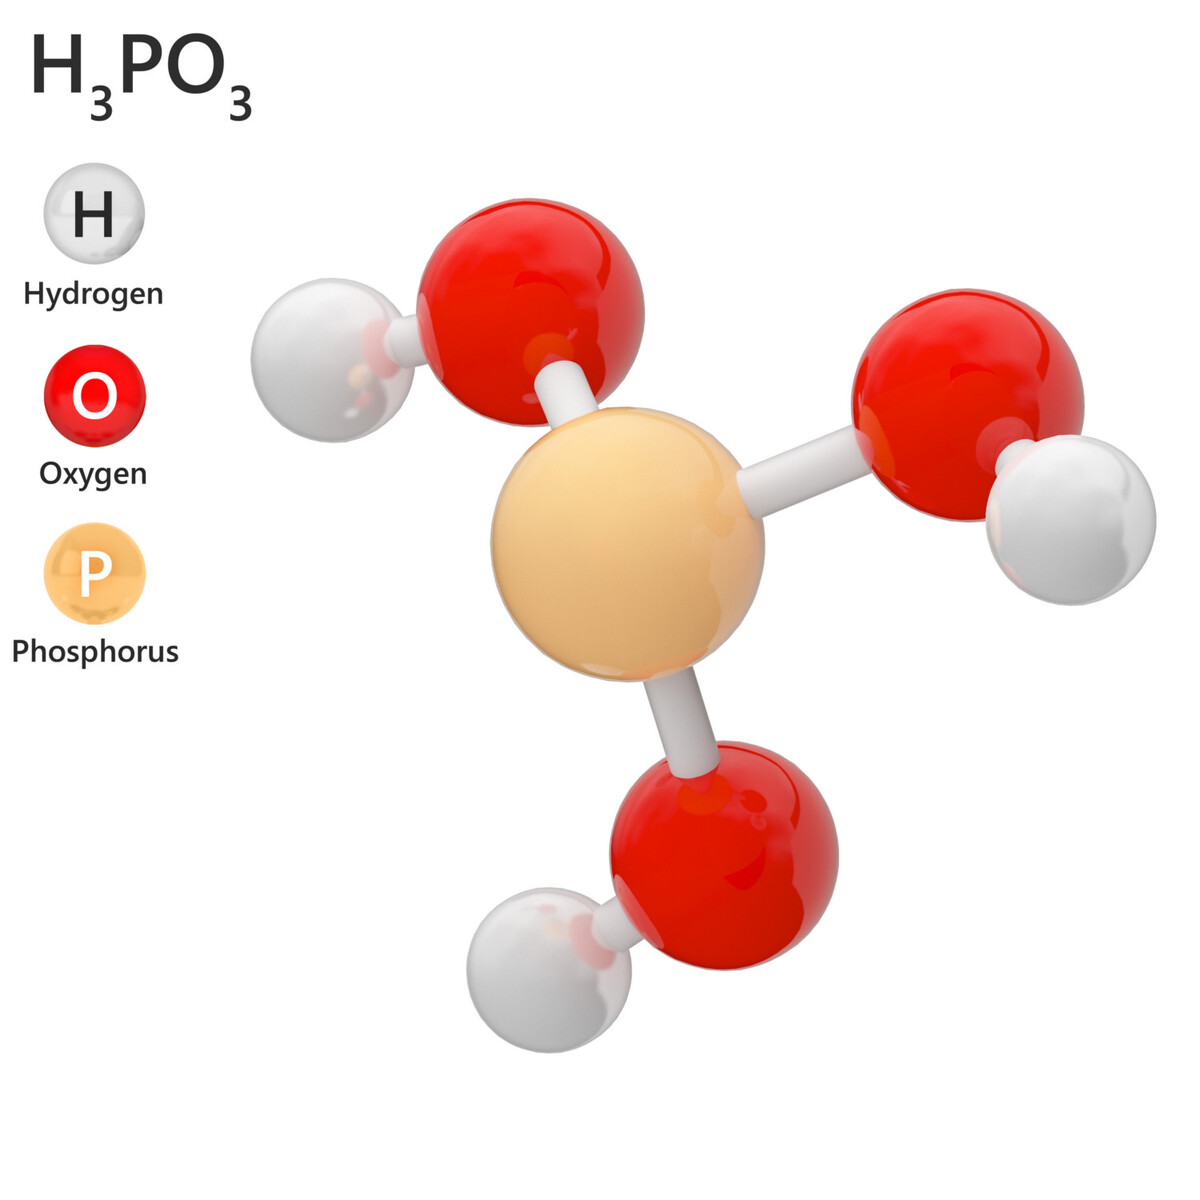 Acide Phosphorique 75% - CAS N° 7664-38-2